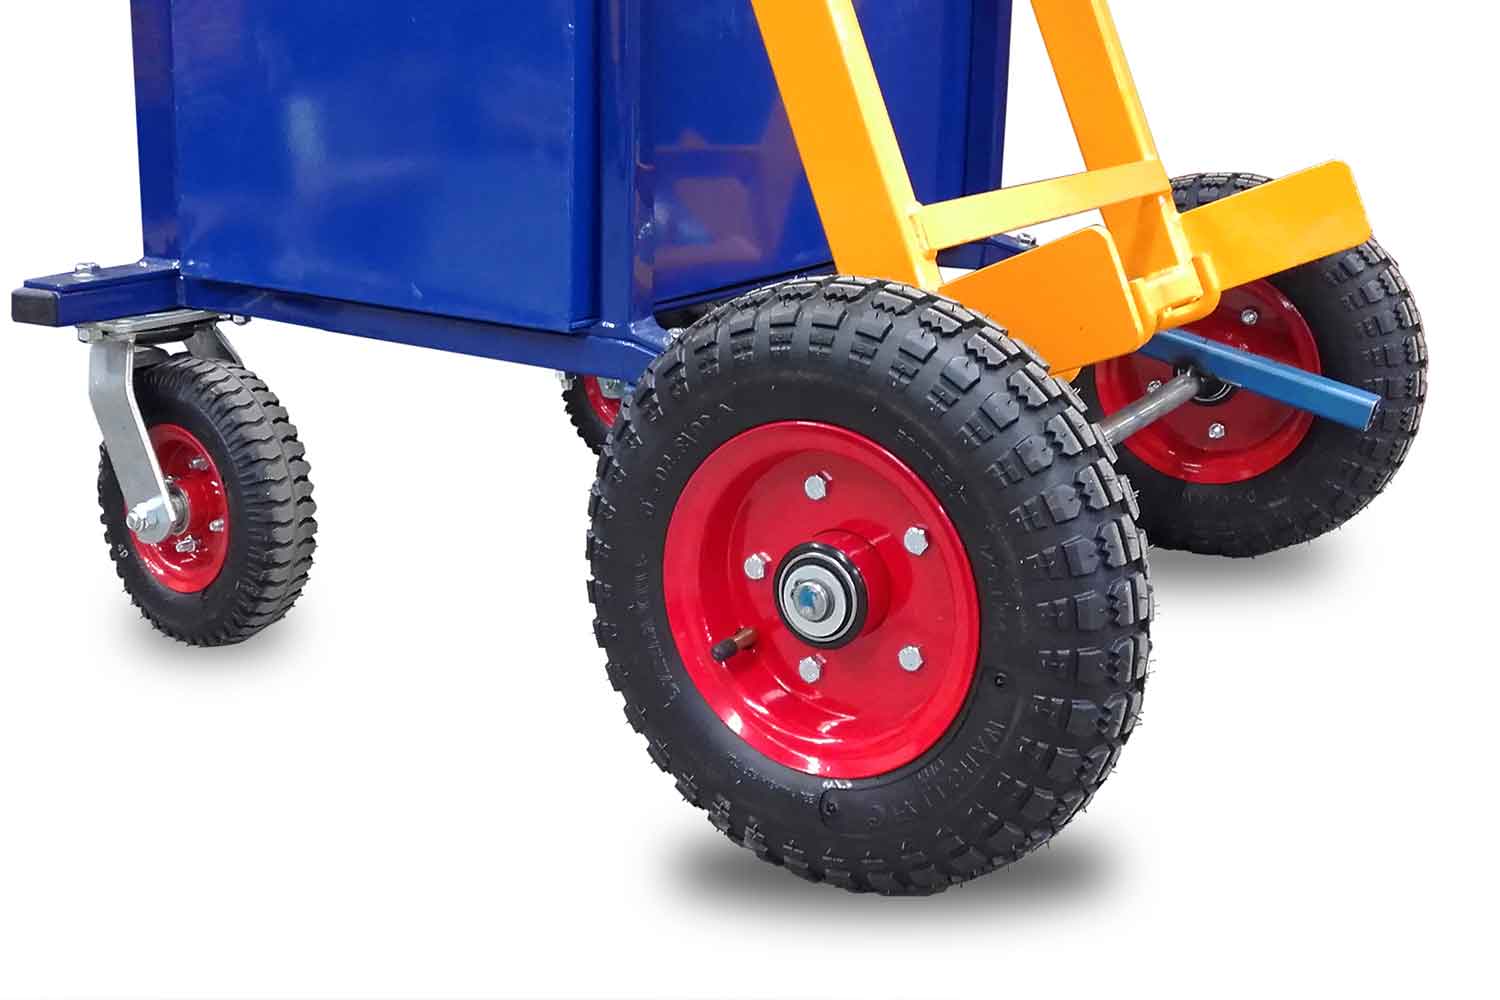 A close-up of the 'All Terrain' bin lifter pneumatic wheels